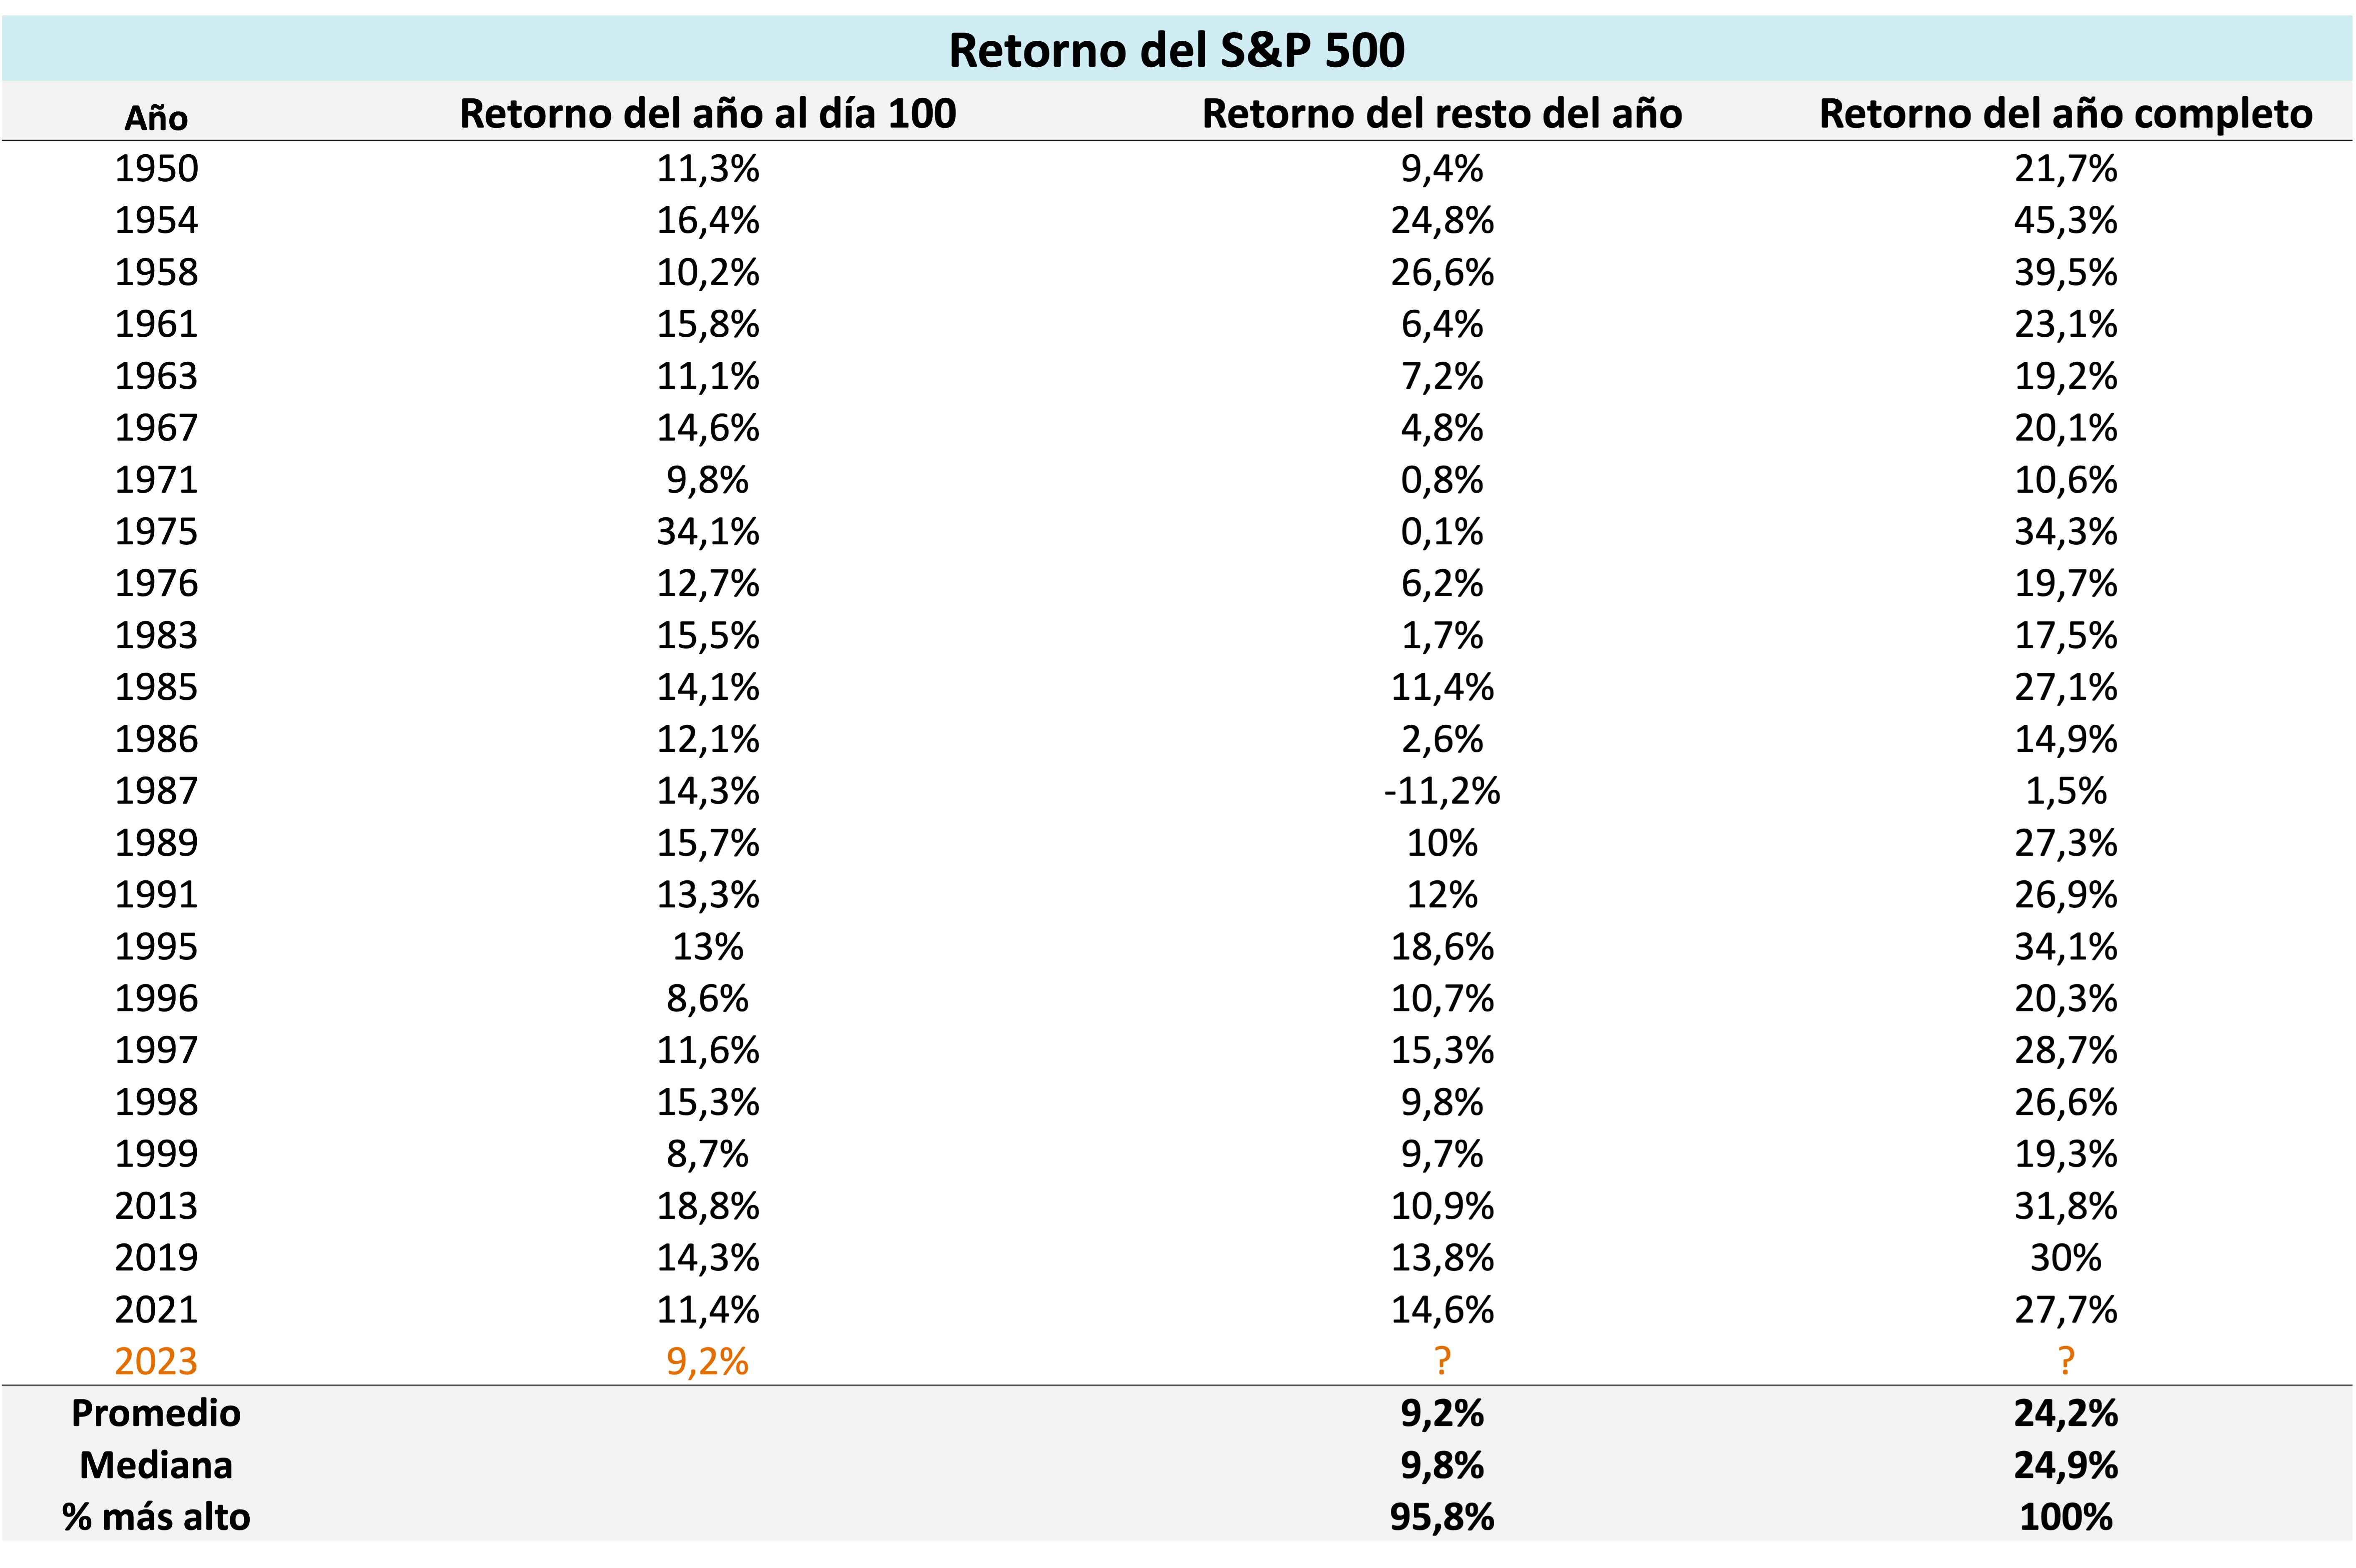 Esta tabla muestra de tres formas los retornos del S&P 500 en los años en los que el mercado superó 8% al día 100 del año: retornos del año al día 100, retornos del resto del año y retornos del año completo.